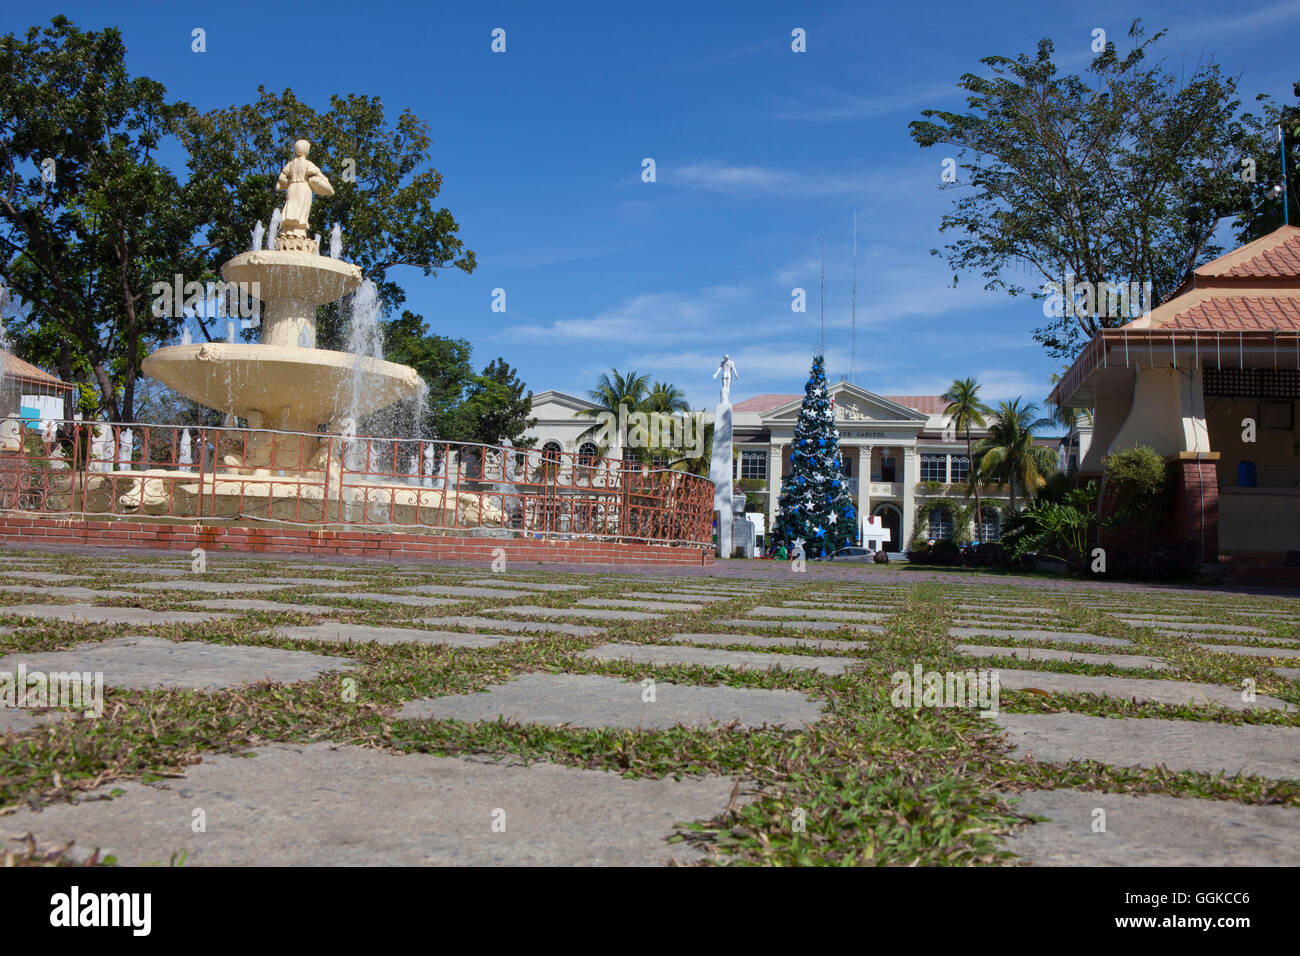 Aurora Park en la ciudad de Laoag, capital de la provincia de Ilocos Norte en la isla principal de Luzón, Kapitol der Provinz Ilocos Norte en Laoag Foto de stock